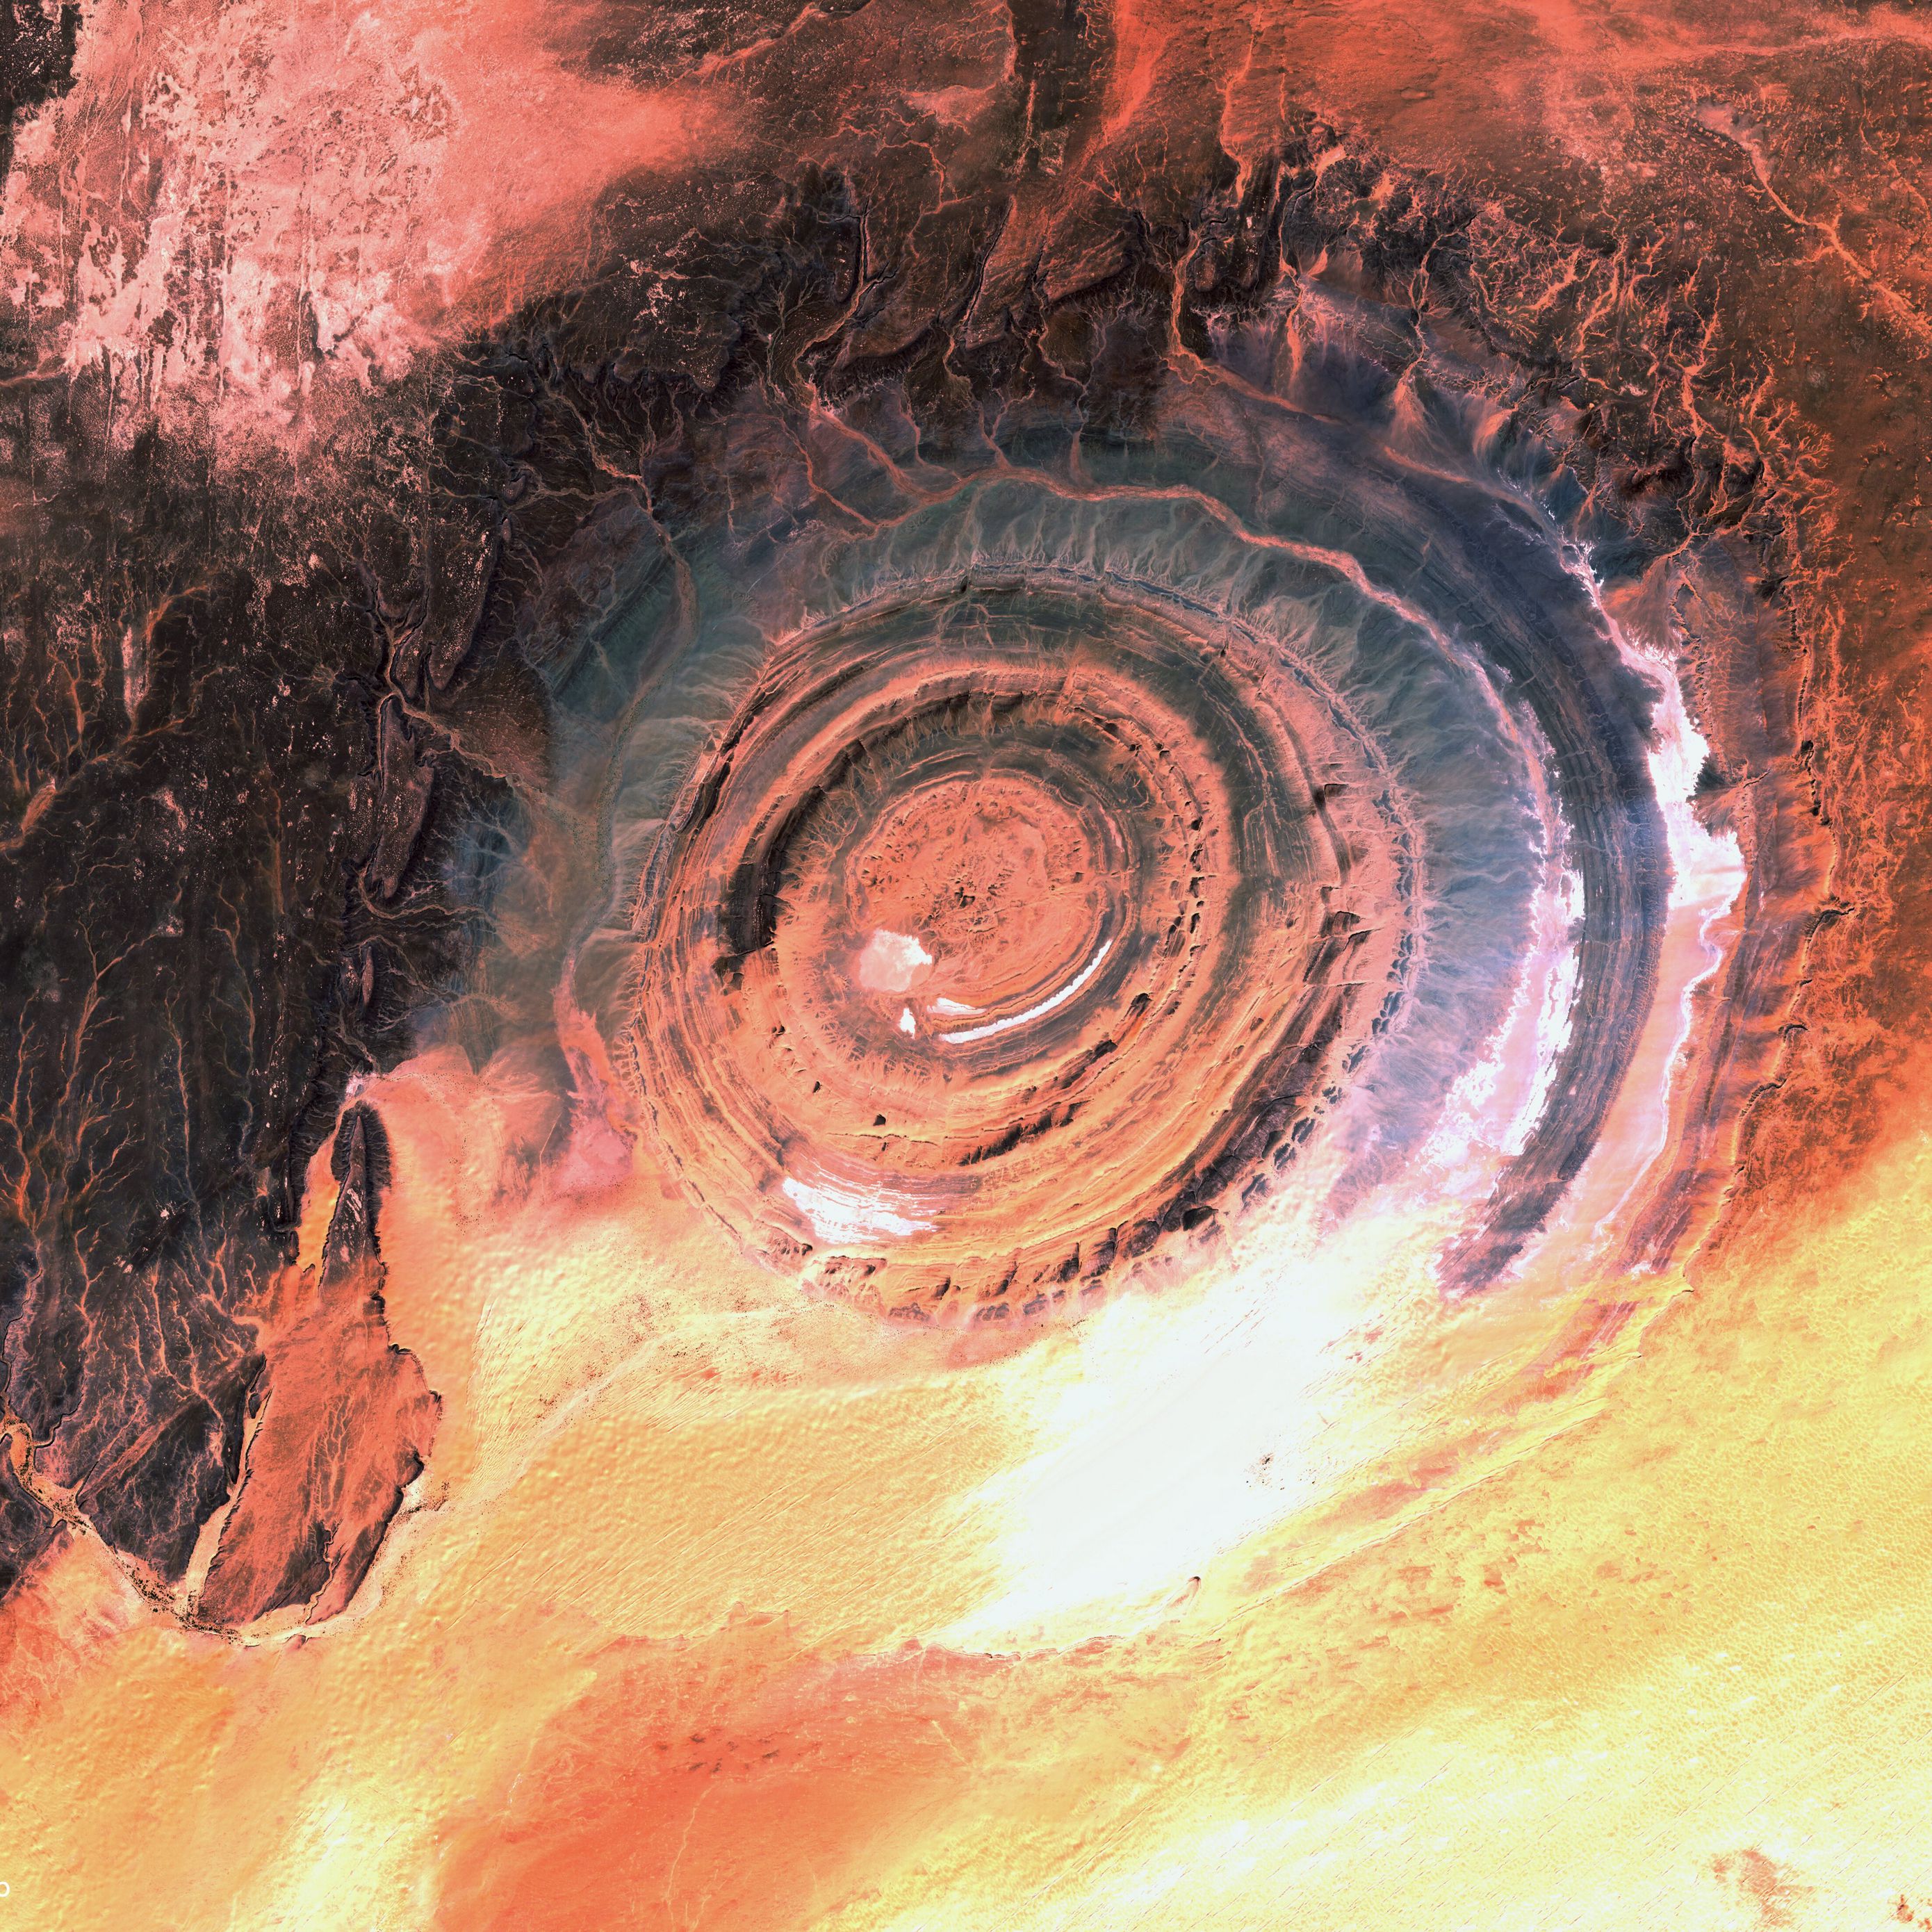 глаз сахары фото из космоса